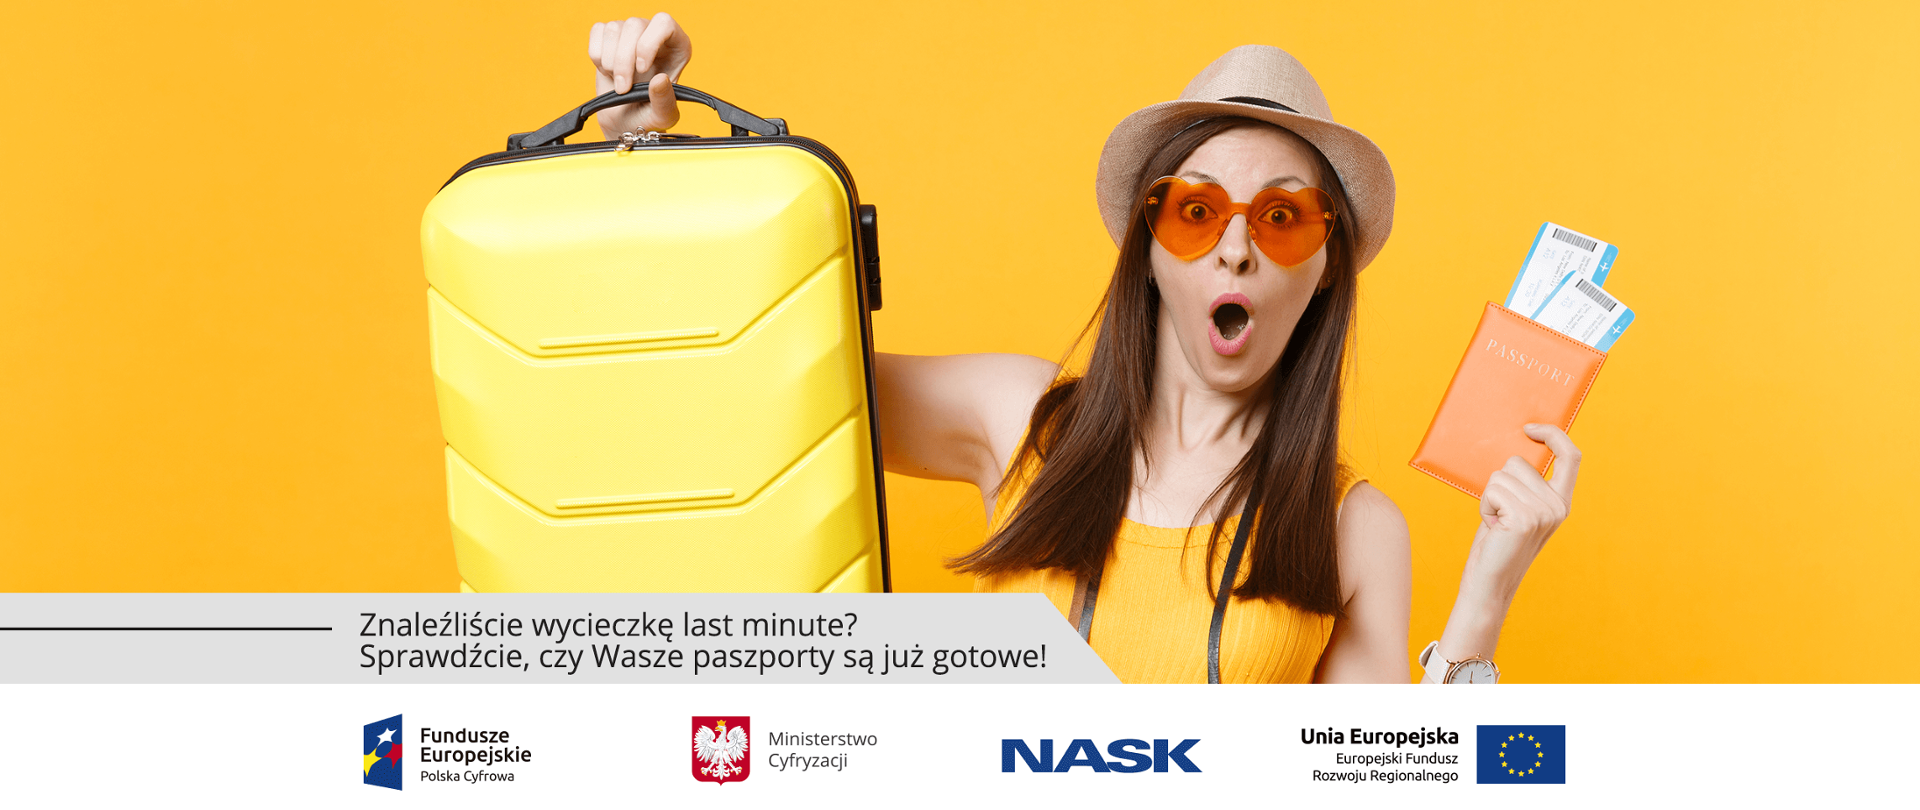 Na żółtym tle dziewczyna w żółtej koszulce, kapeluszu i okularach przeciwsłonecznych. W jednej ręce trzyma wysoko żółtą walizkę, w drugiej paszport i bilety lotnicze.